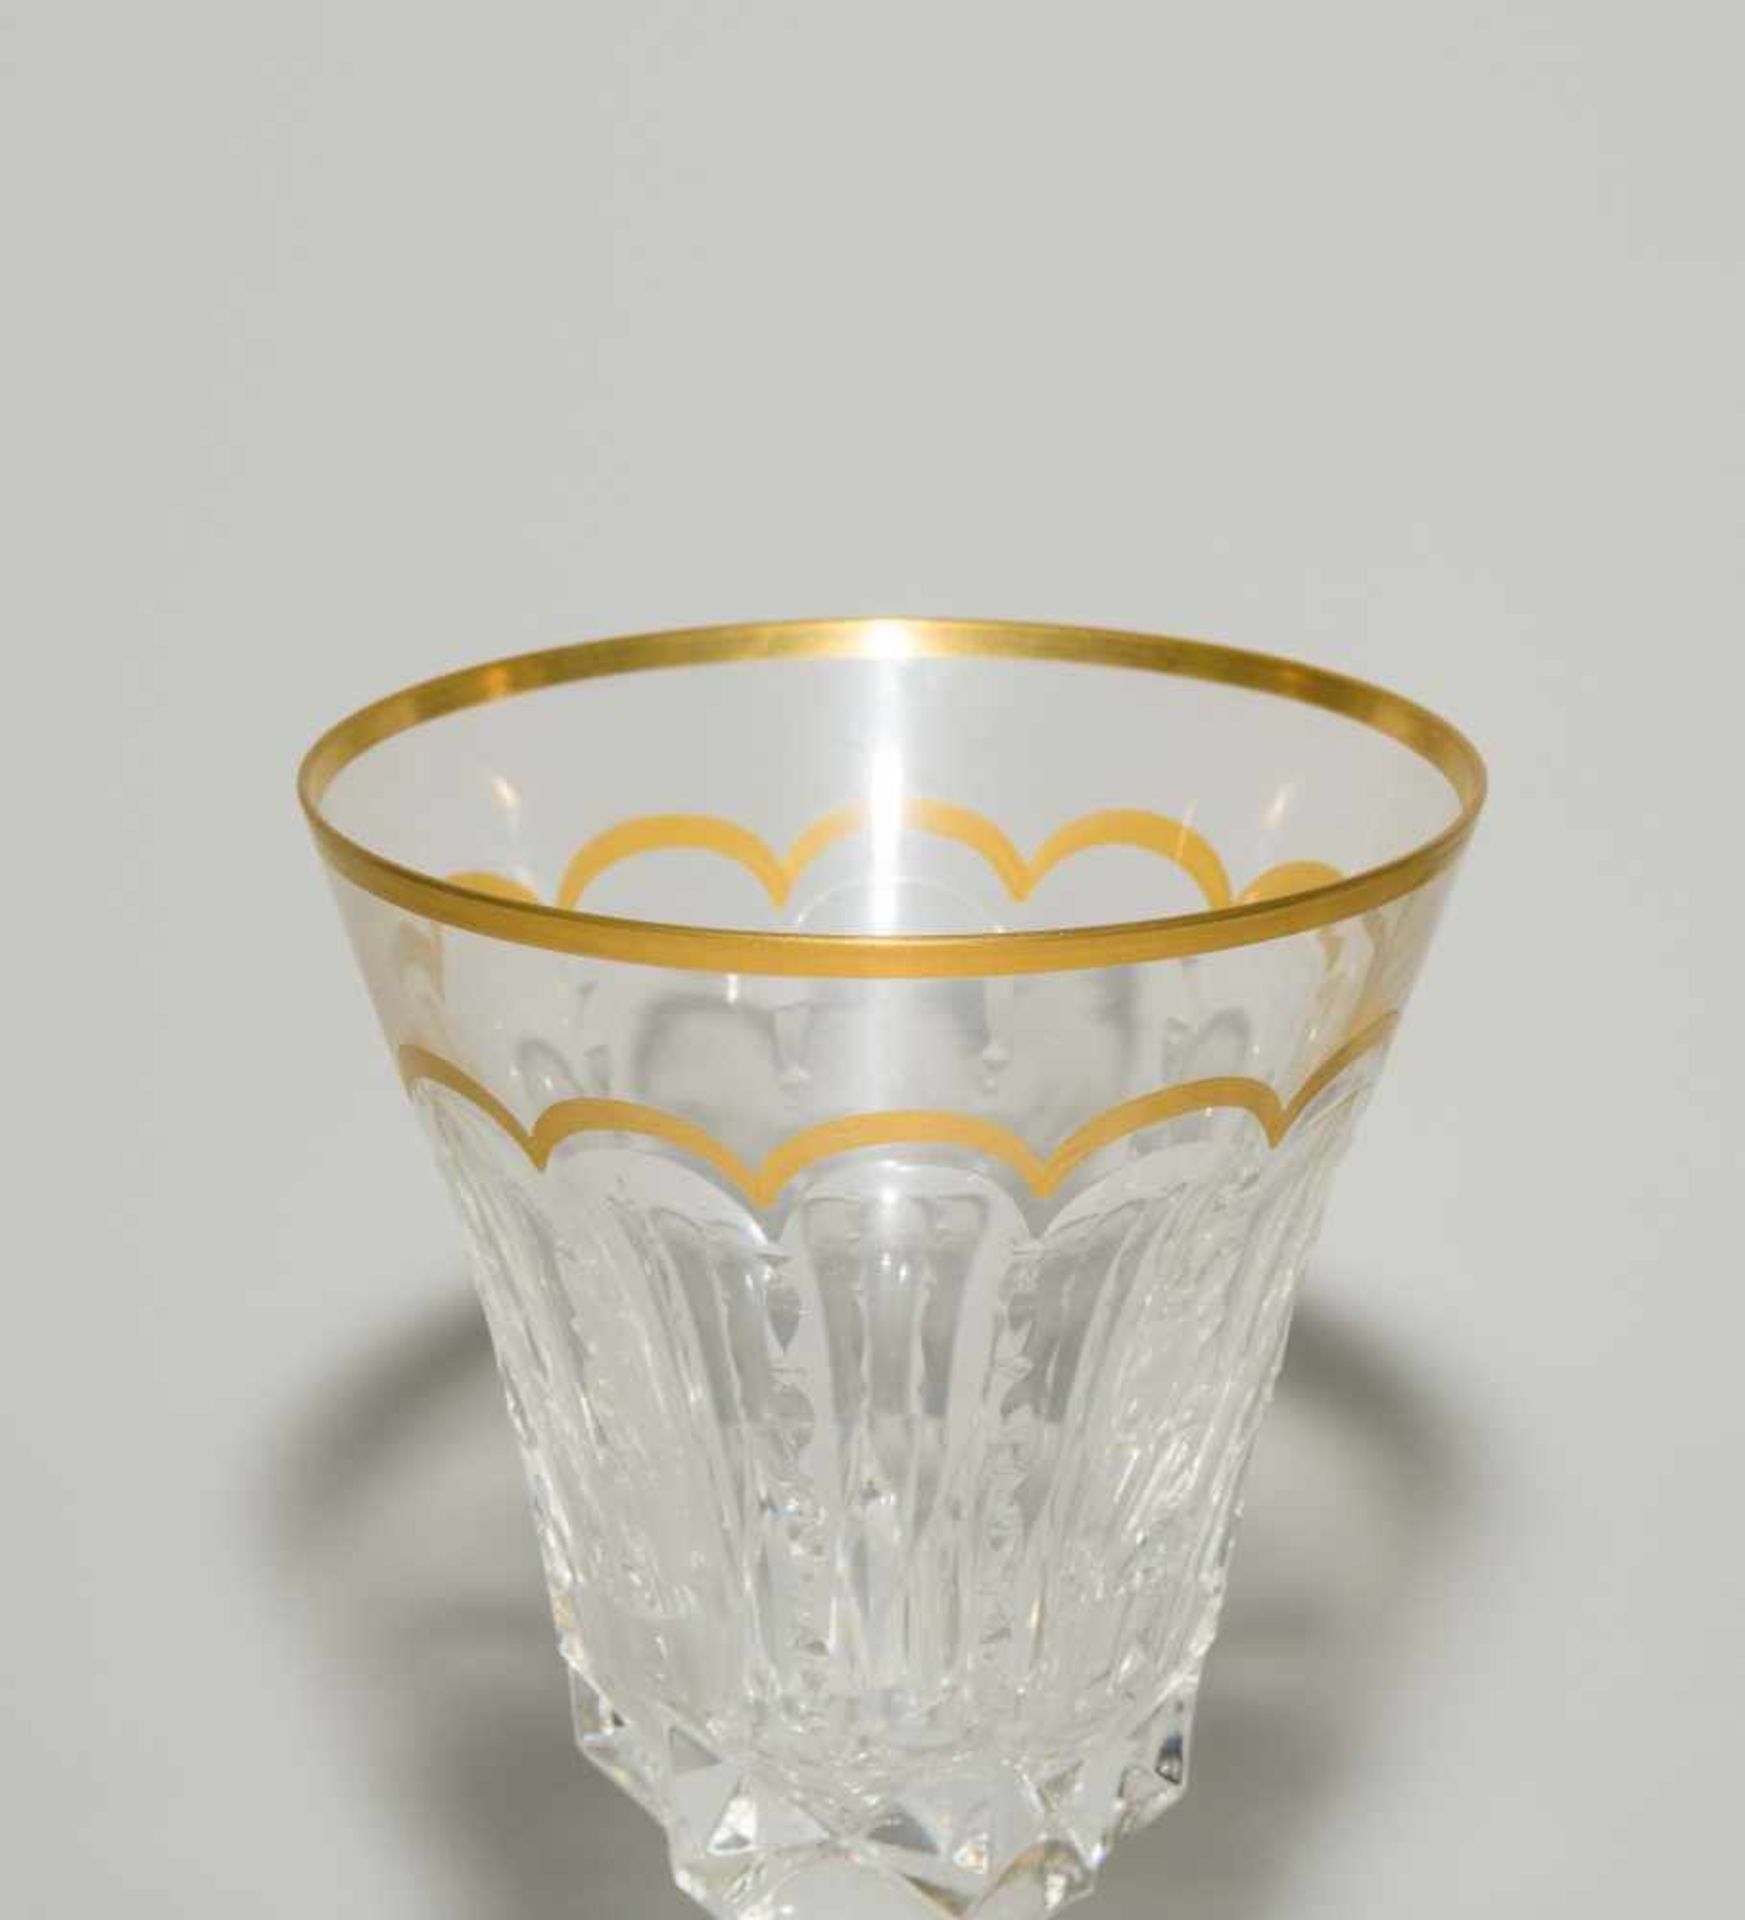 GläserserviceSt. Louis "Excellence", 20.Jh. Farbloses Kristallglas, Schliffdekor, Vergoldung. - Bild 3 aus 10